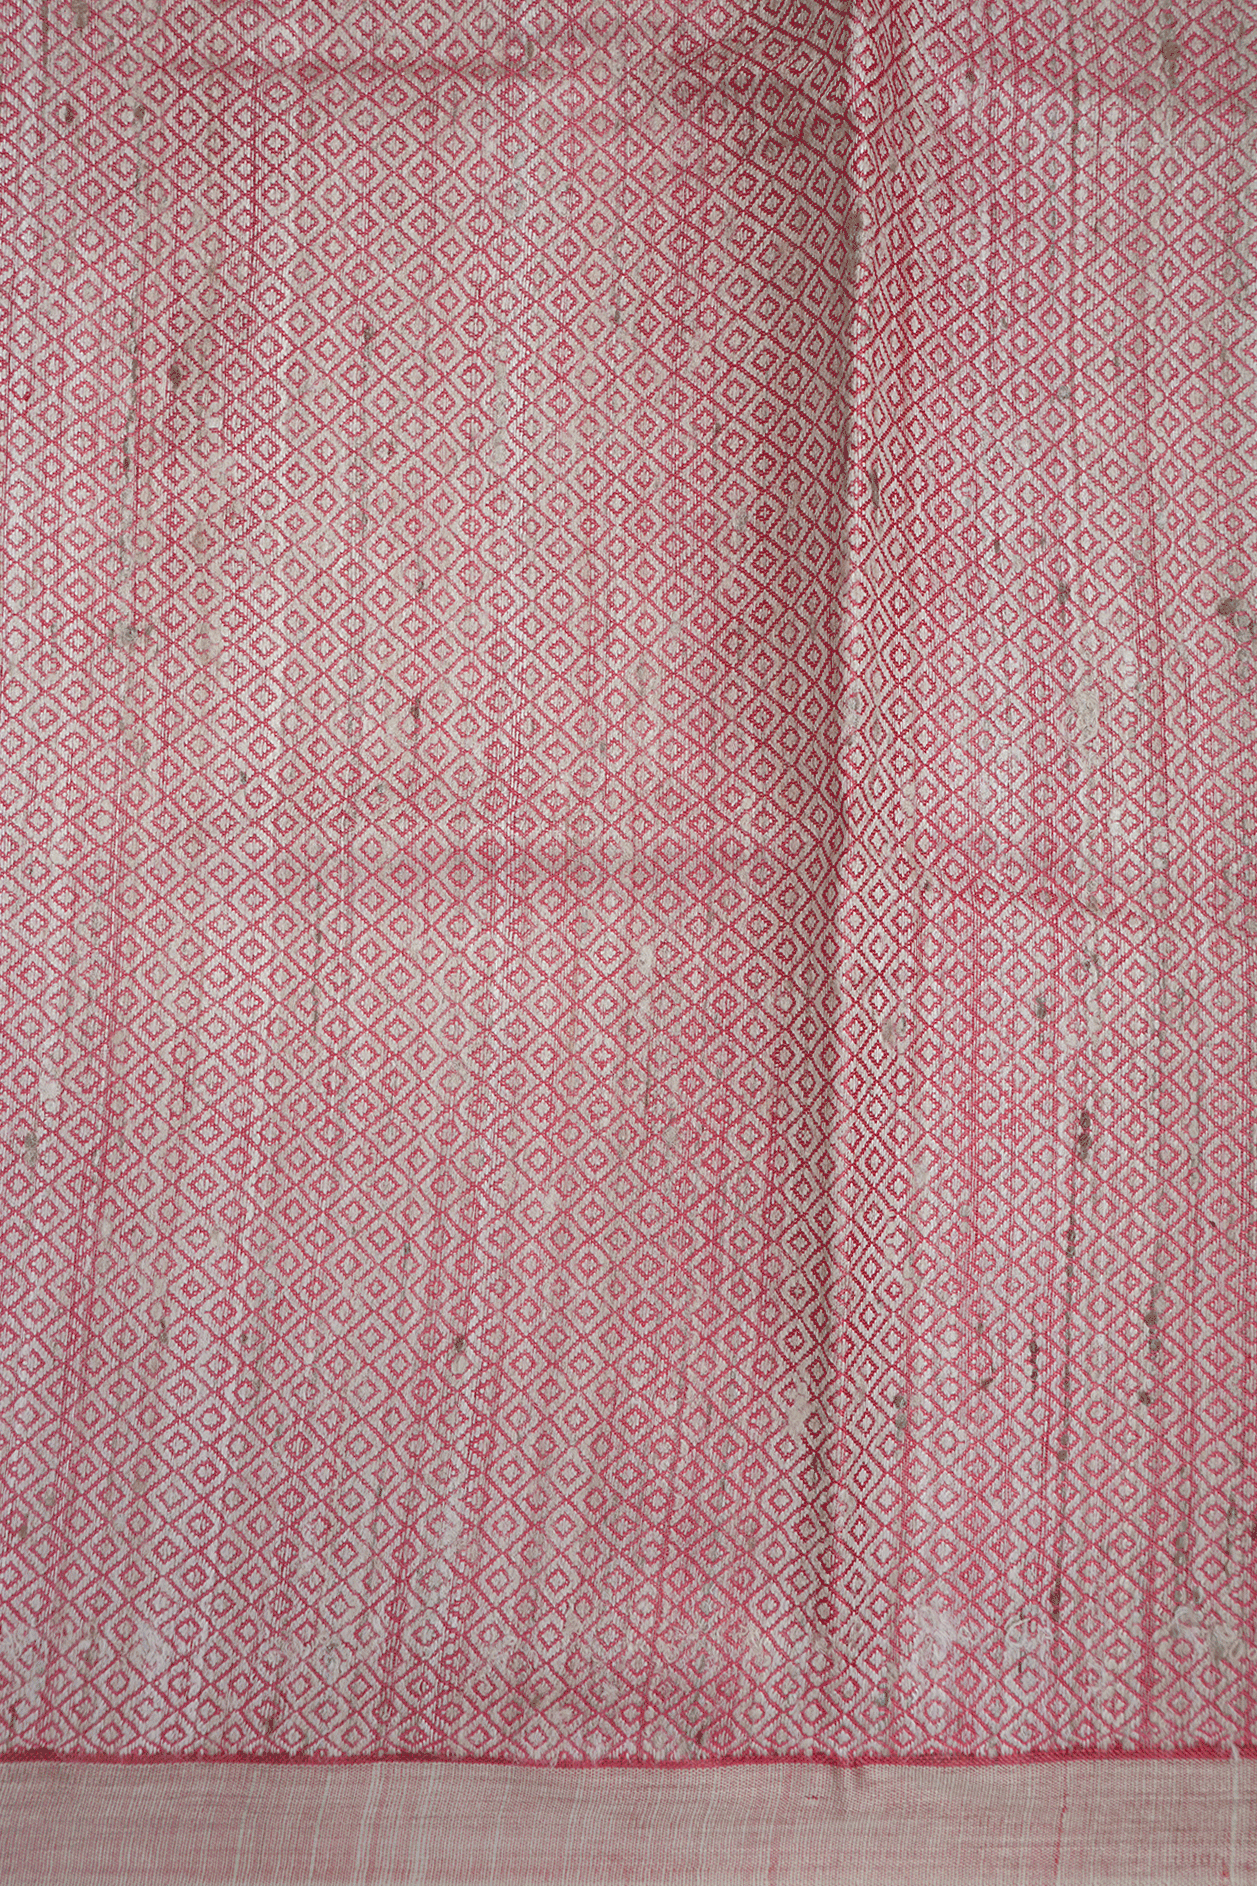 Floral Threadwork Buttas Pastel Red Tussar Silk Saree